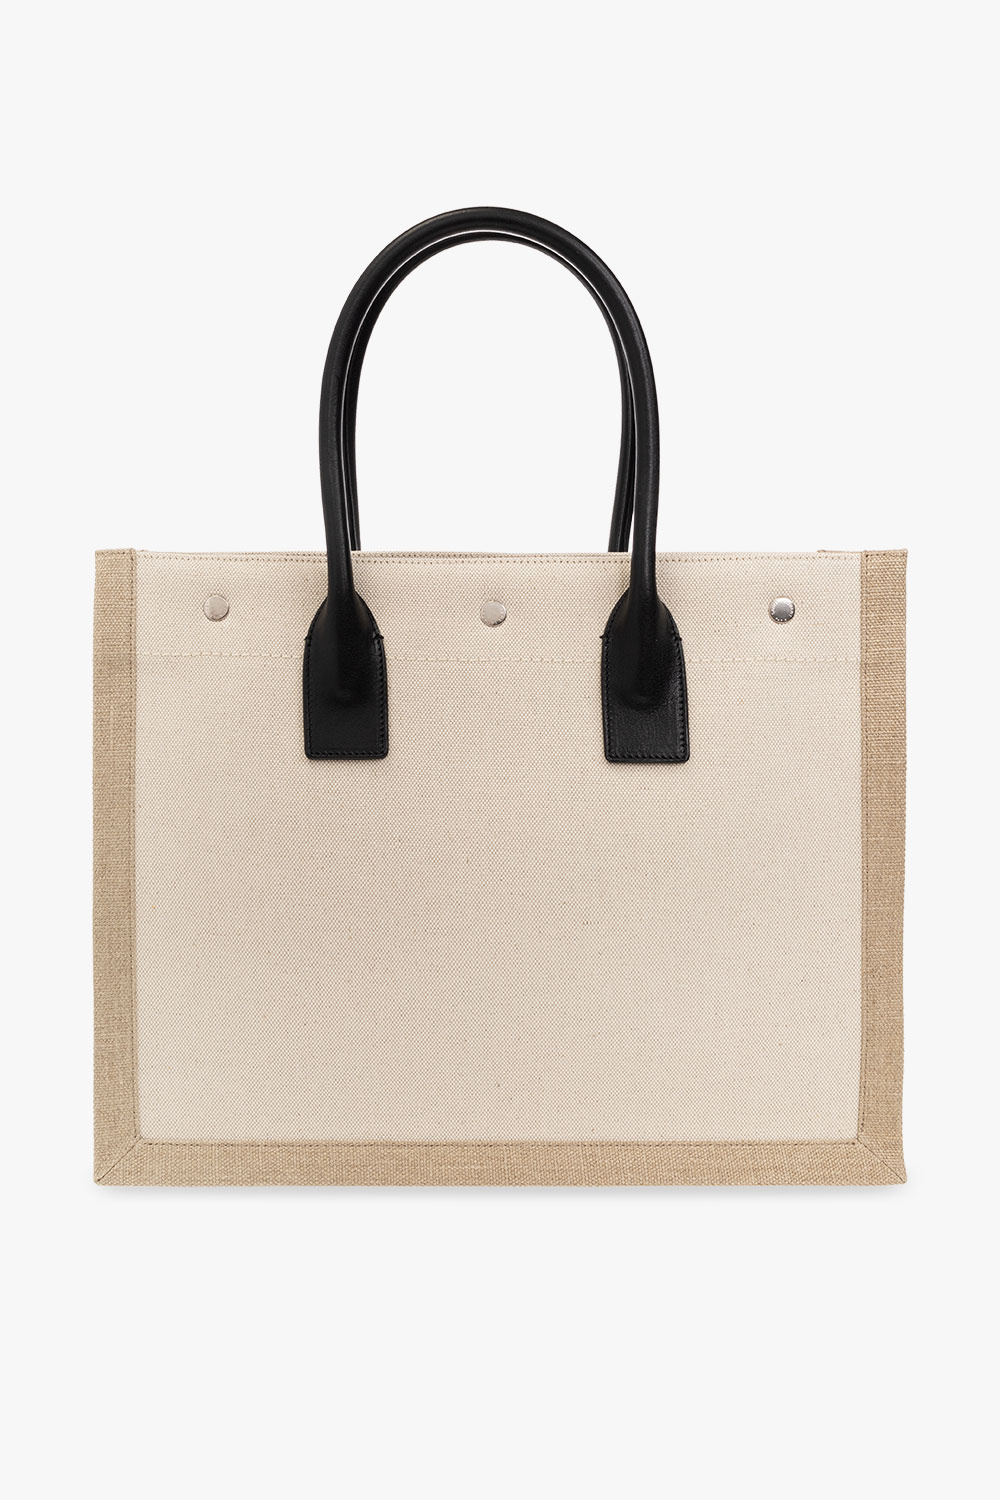 Bag Organizer for Small Rive Gauche N/S Shopping Bag Bag 